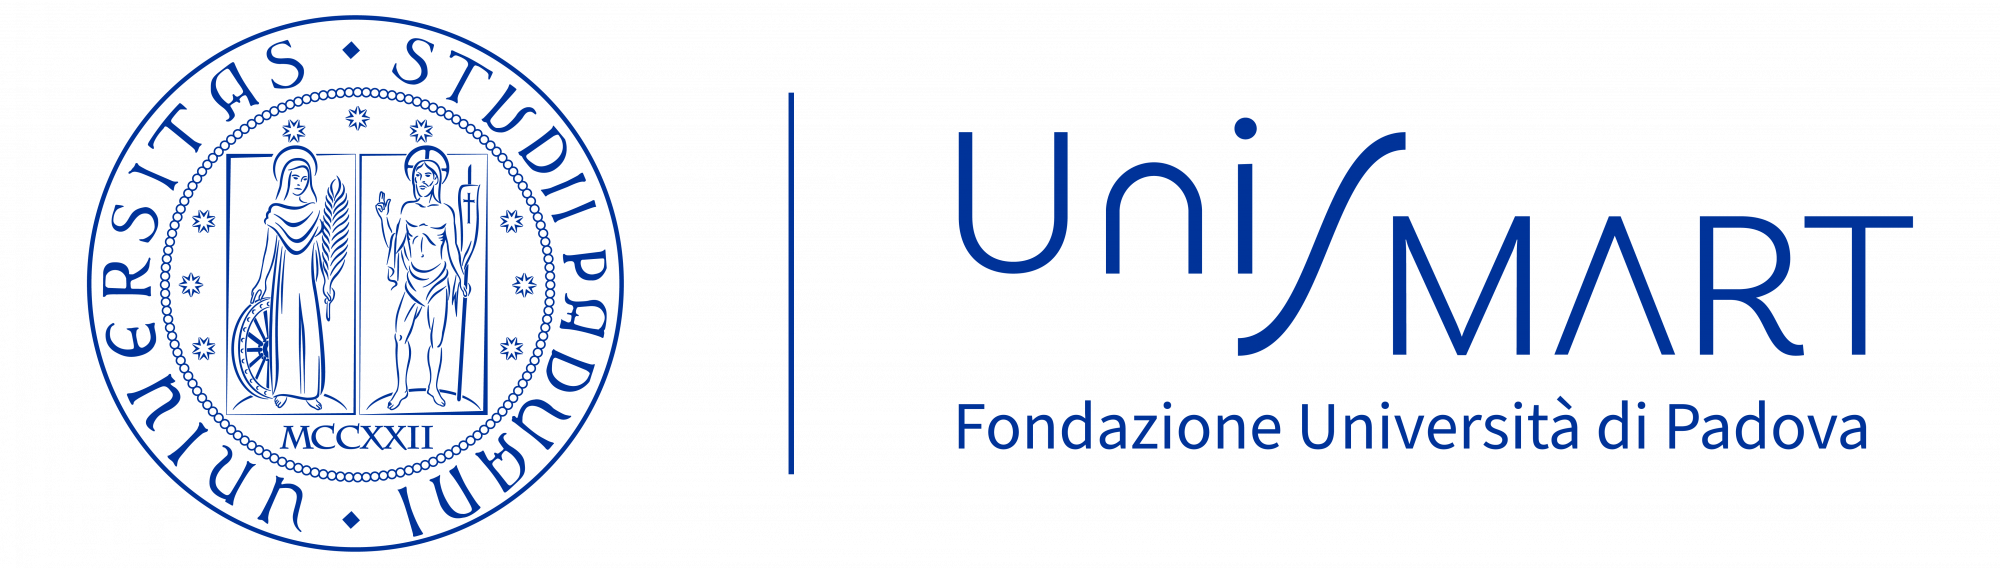 Unismart - Fondazione Università di Padova